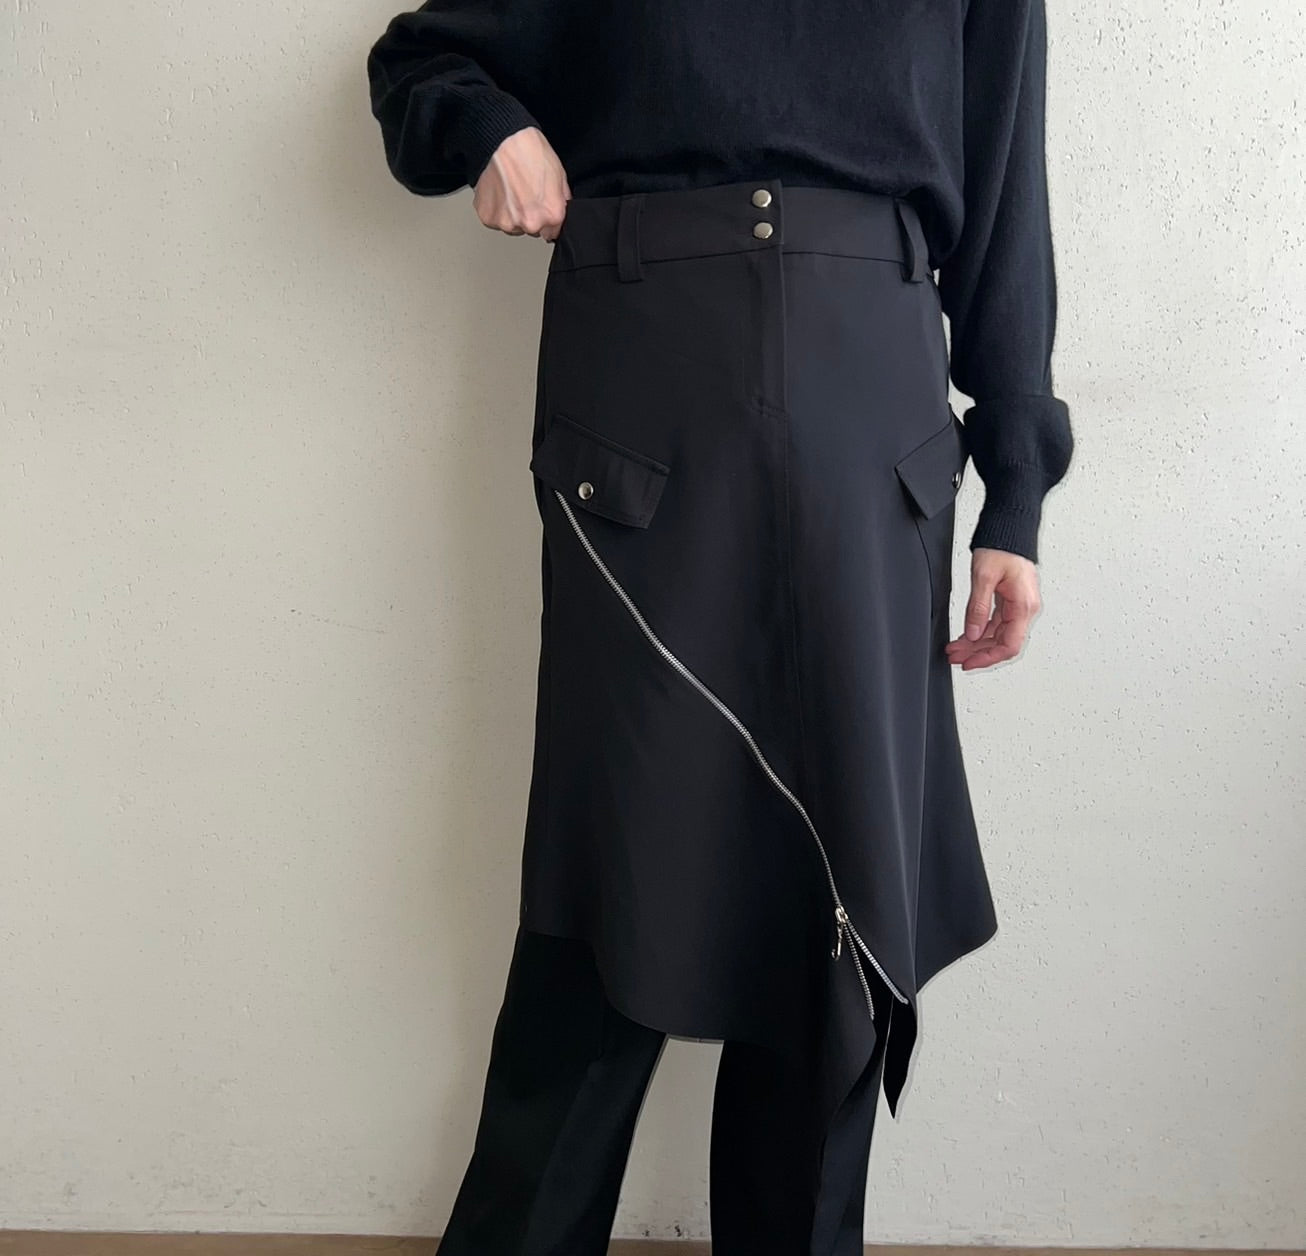 90s Zipped Design Skirt Made in France